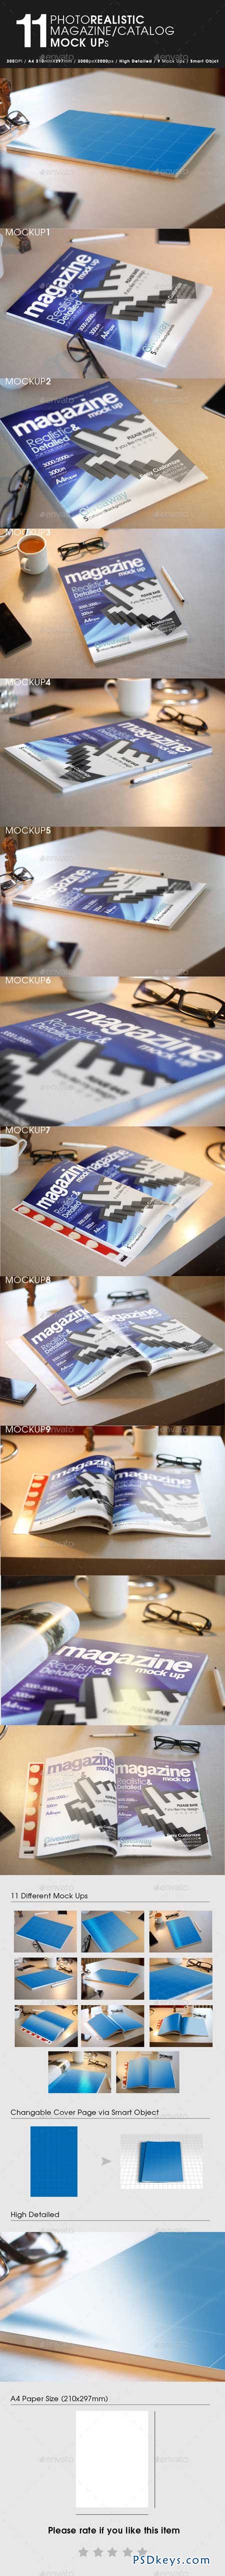 11 Photorealistic Magazine Mock Up 9456314